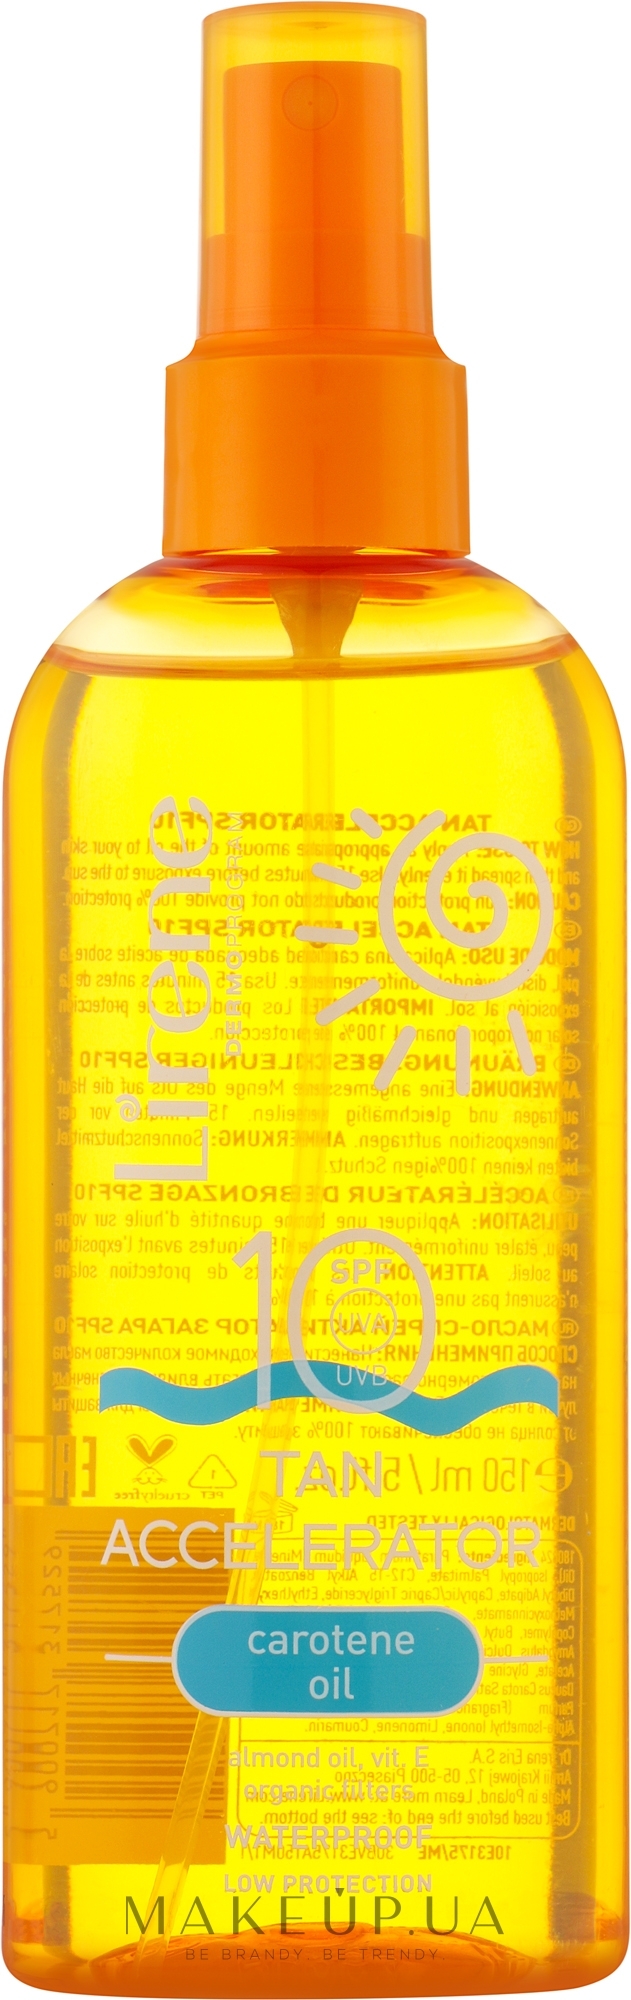 Ускоритель загара с каротиновым маслом - Lirene Oil Waterproof SPF 10 — фото 150ml